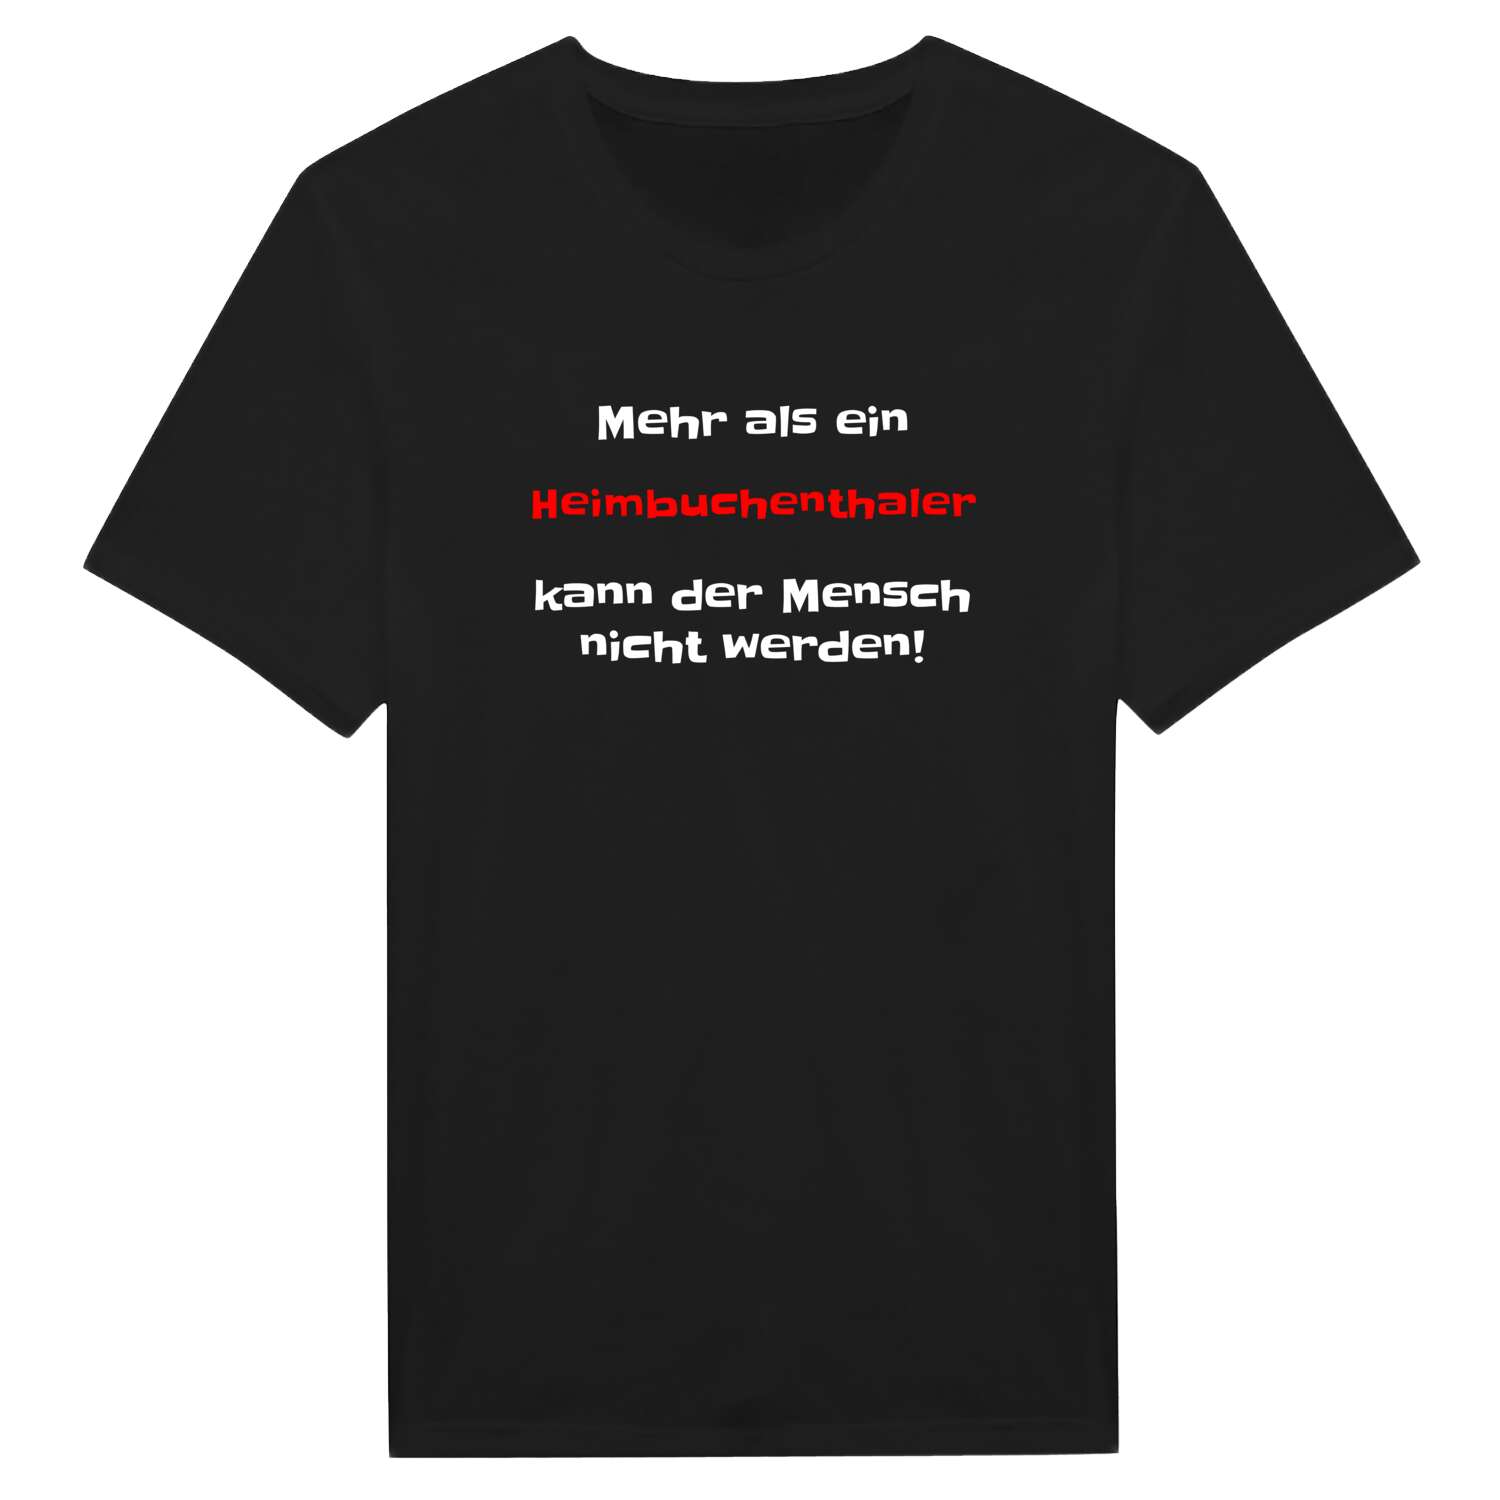 Heimbuchenthal T-Shirt »Mehr als ein«